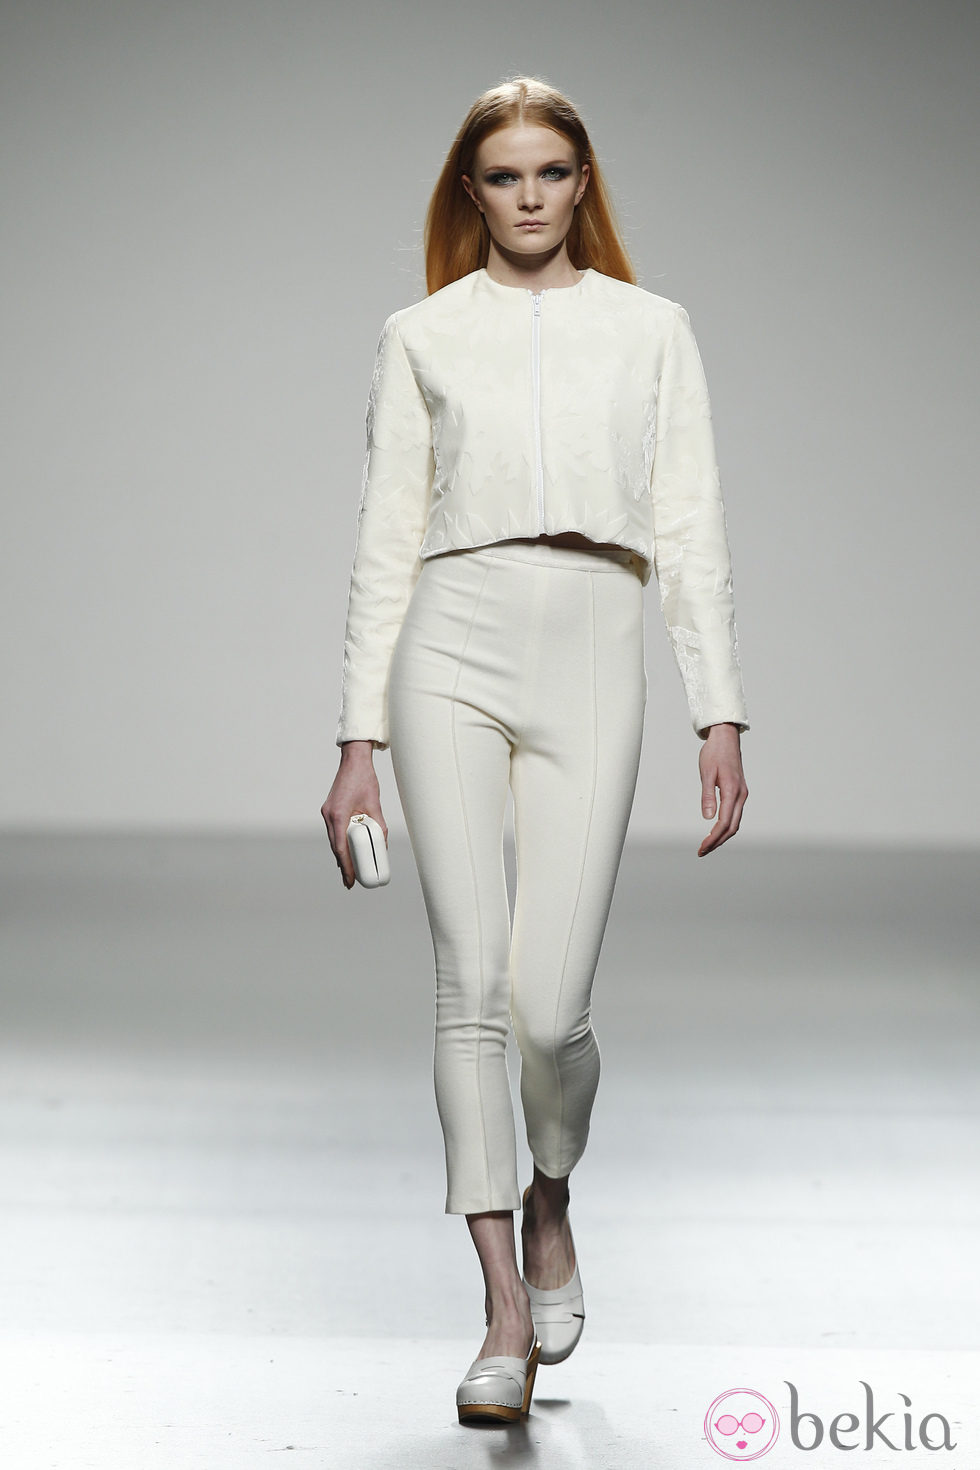 Pantalón capri y top blanco de River William en 'El Ego' de Fashion Week Madrid